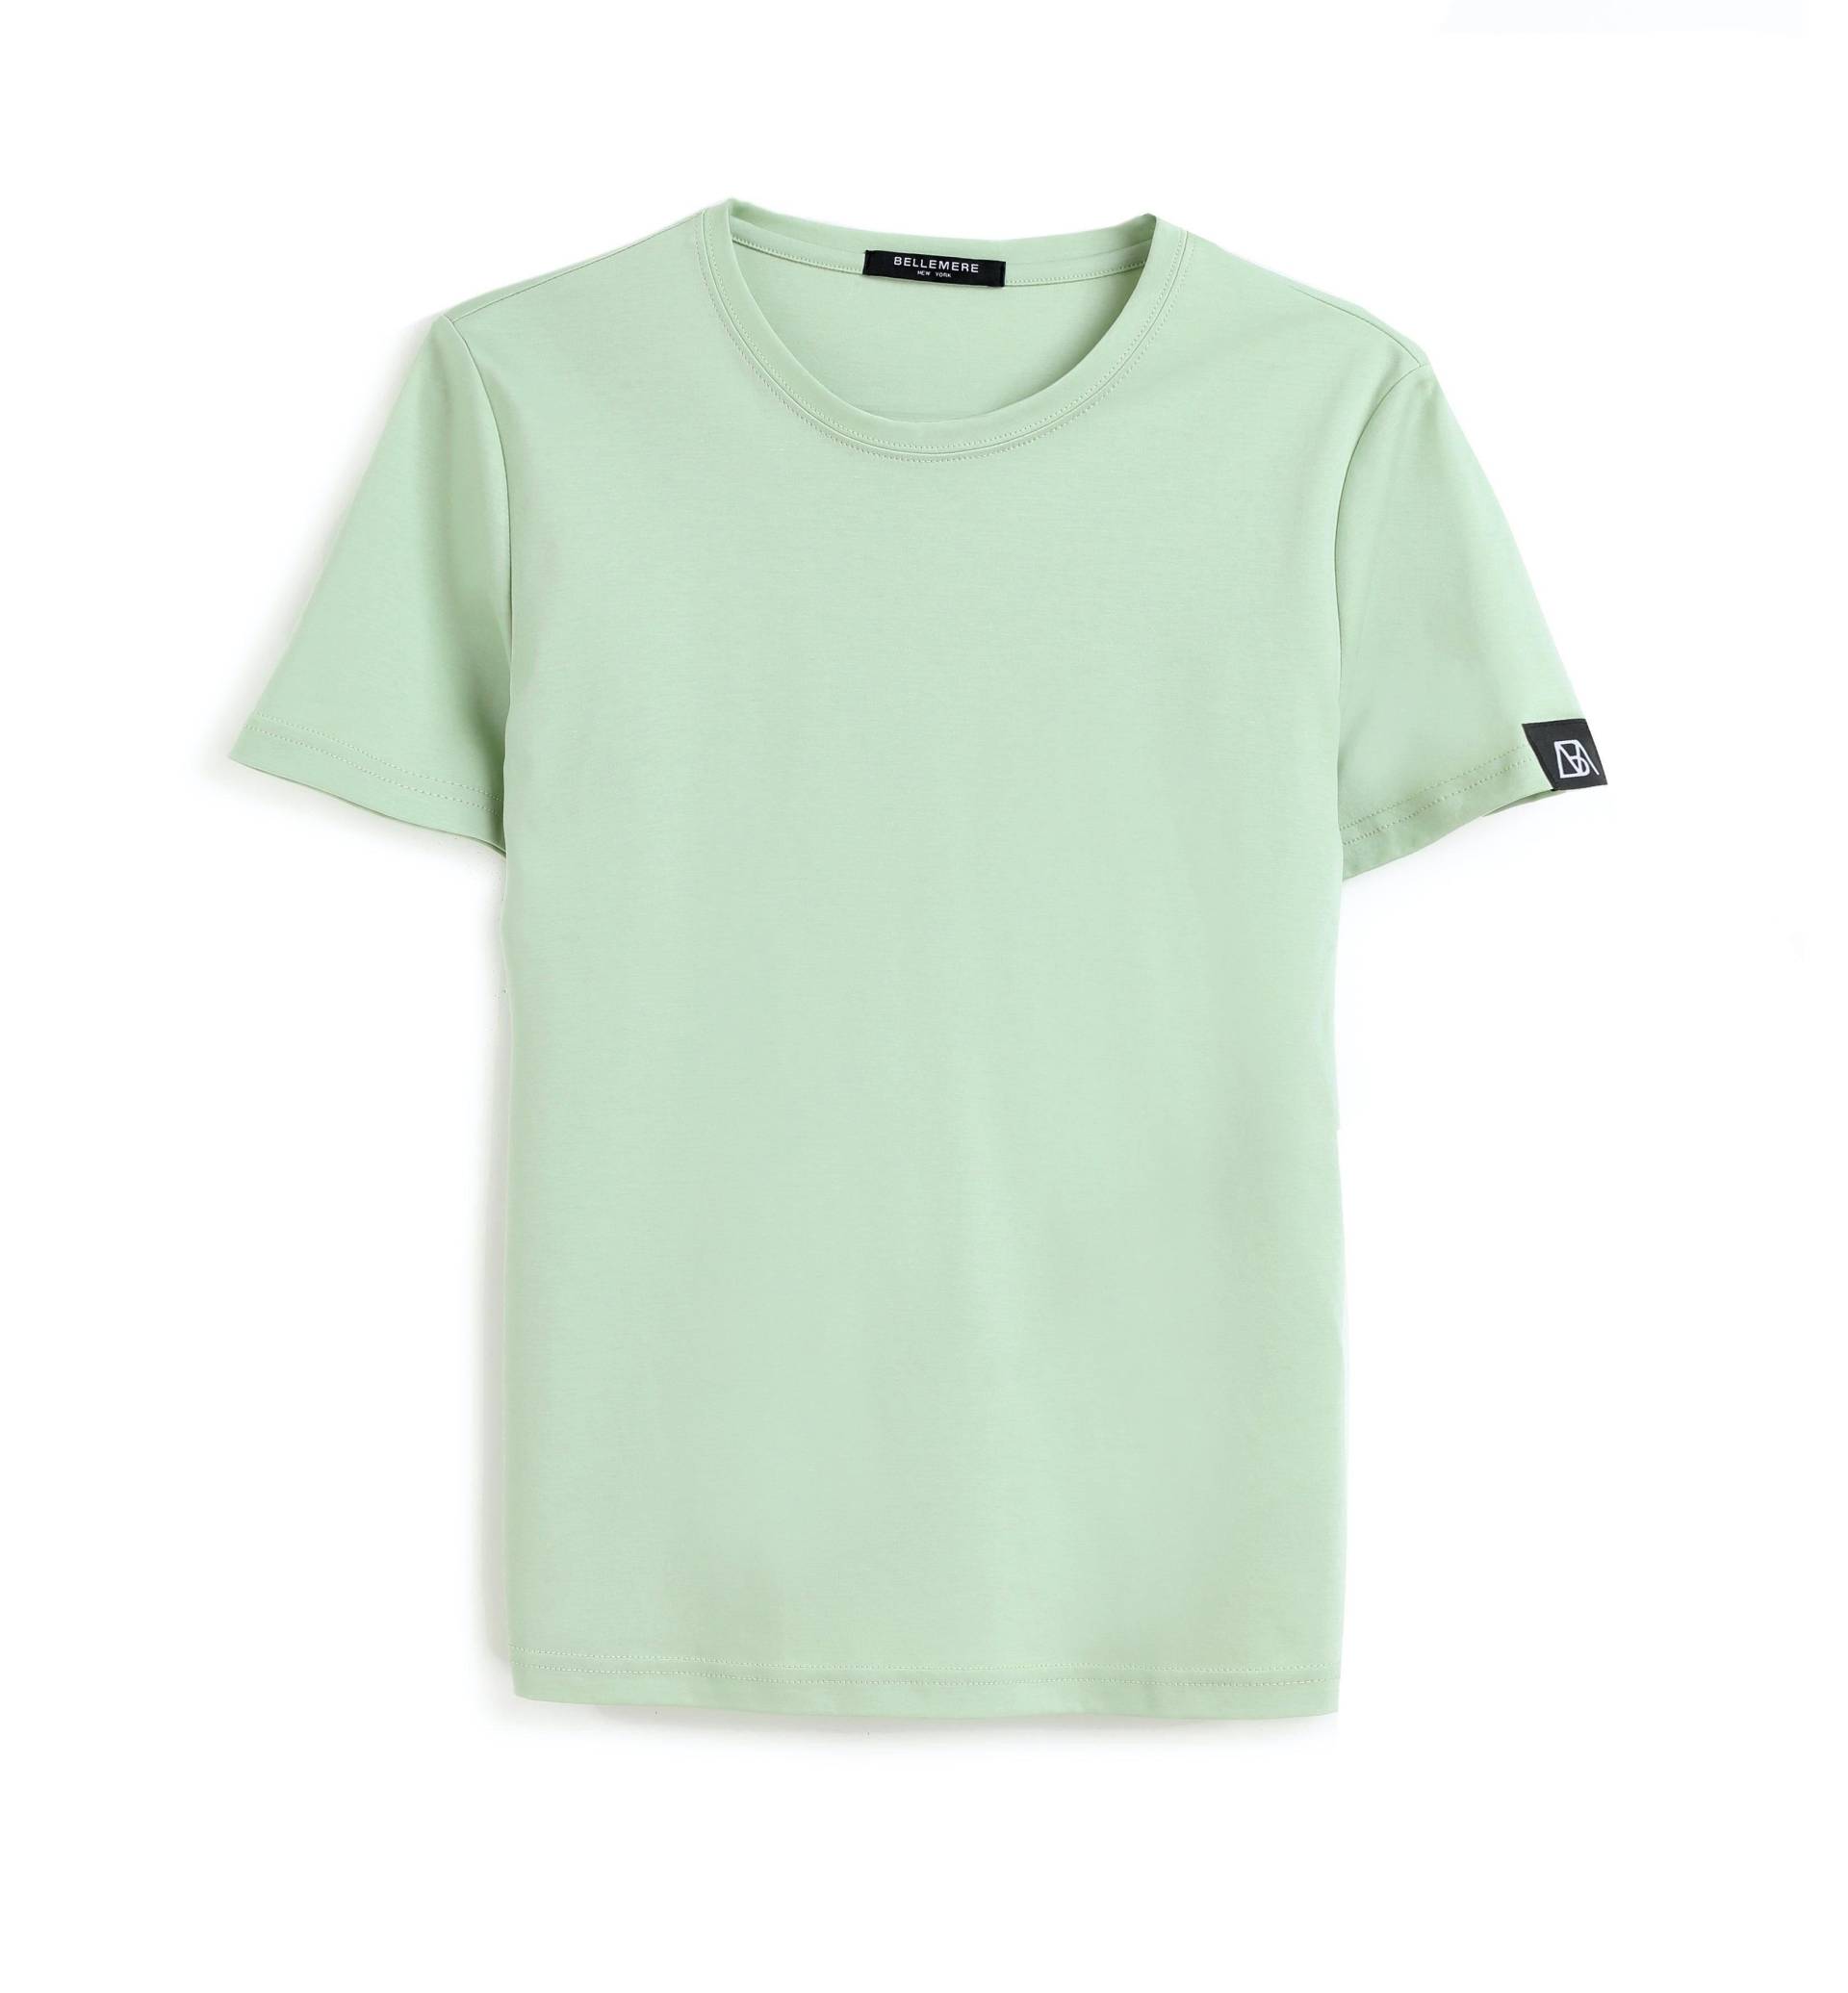 Grand T-shirt Aus Baumwolle Mit Rundhalsausschnitt, 160 G Damen Grün S von Bellemere New York